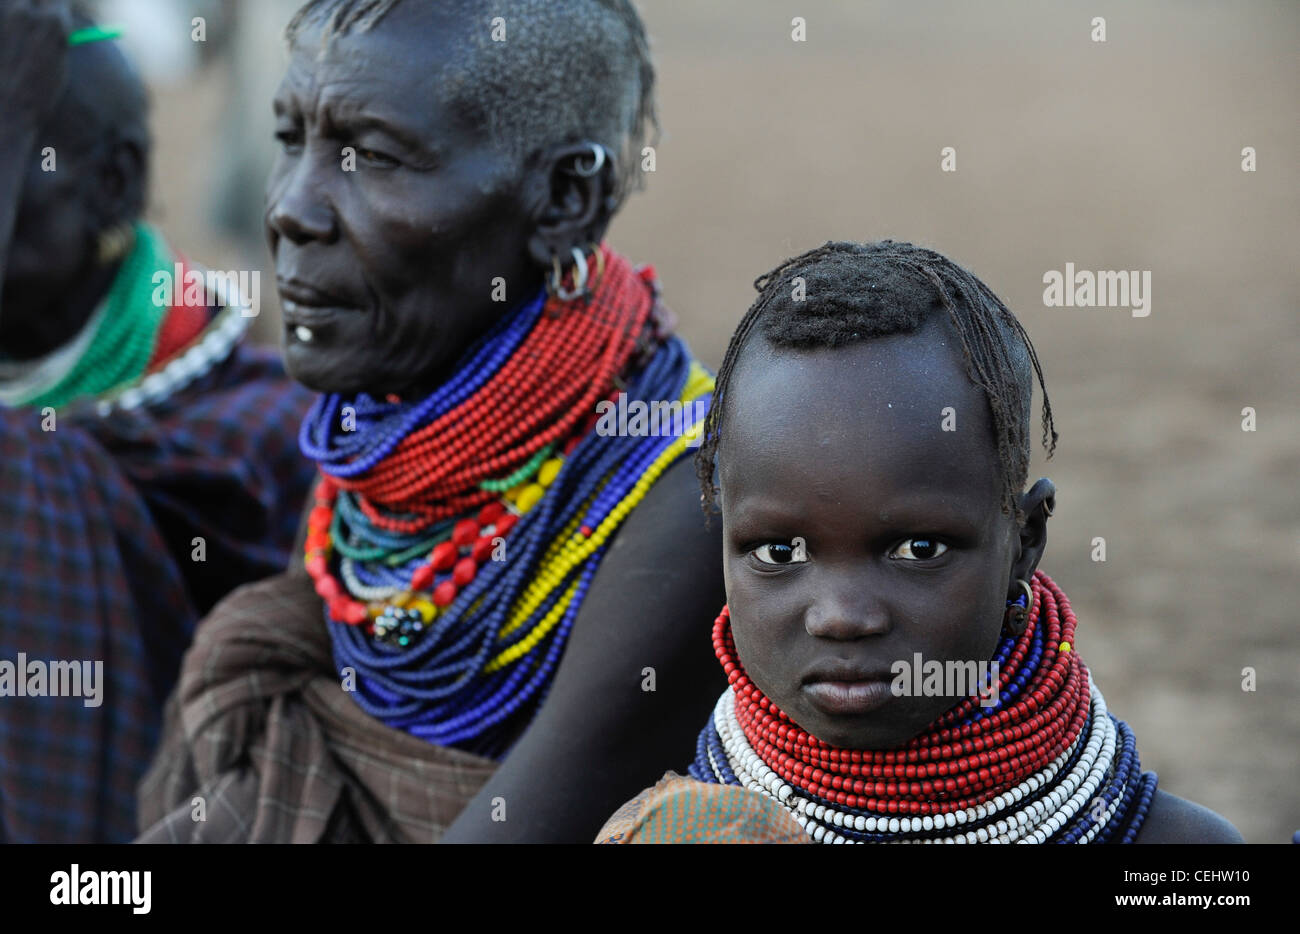 KENYA région Turkana, Kakuma , Turkana une tribu nilotique, la catastrophe de la faim sont permanentes en raison du changement climatique et de la sécheresse, Don Bosco distribue de la nourriture aux femmes et aux enfants affamés Banque D'Images